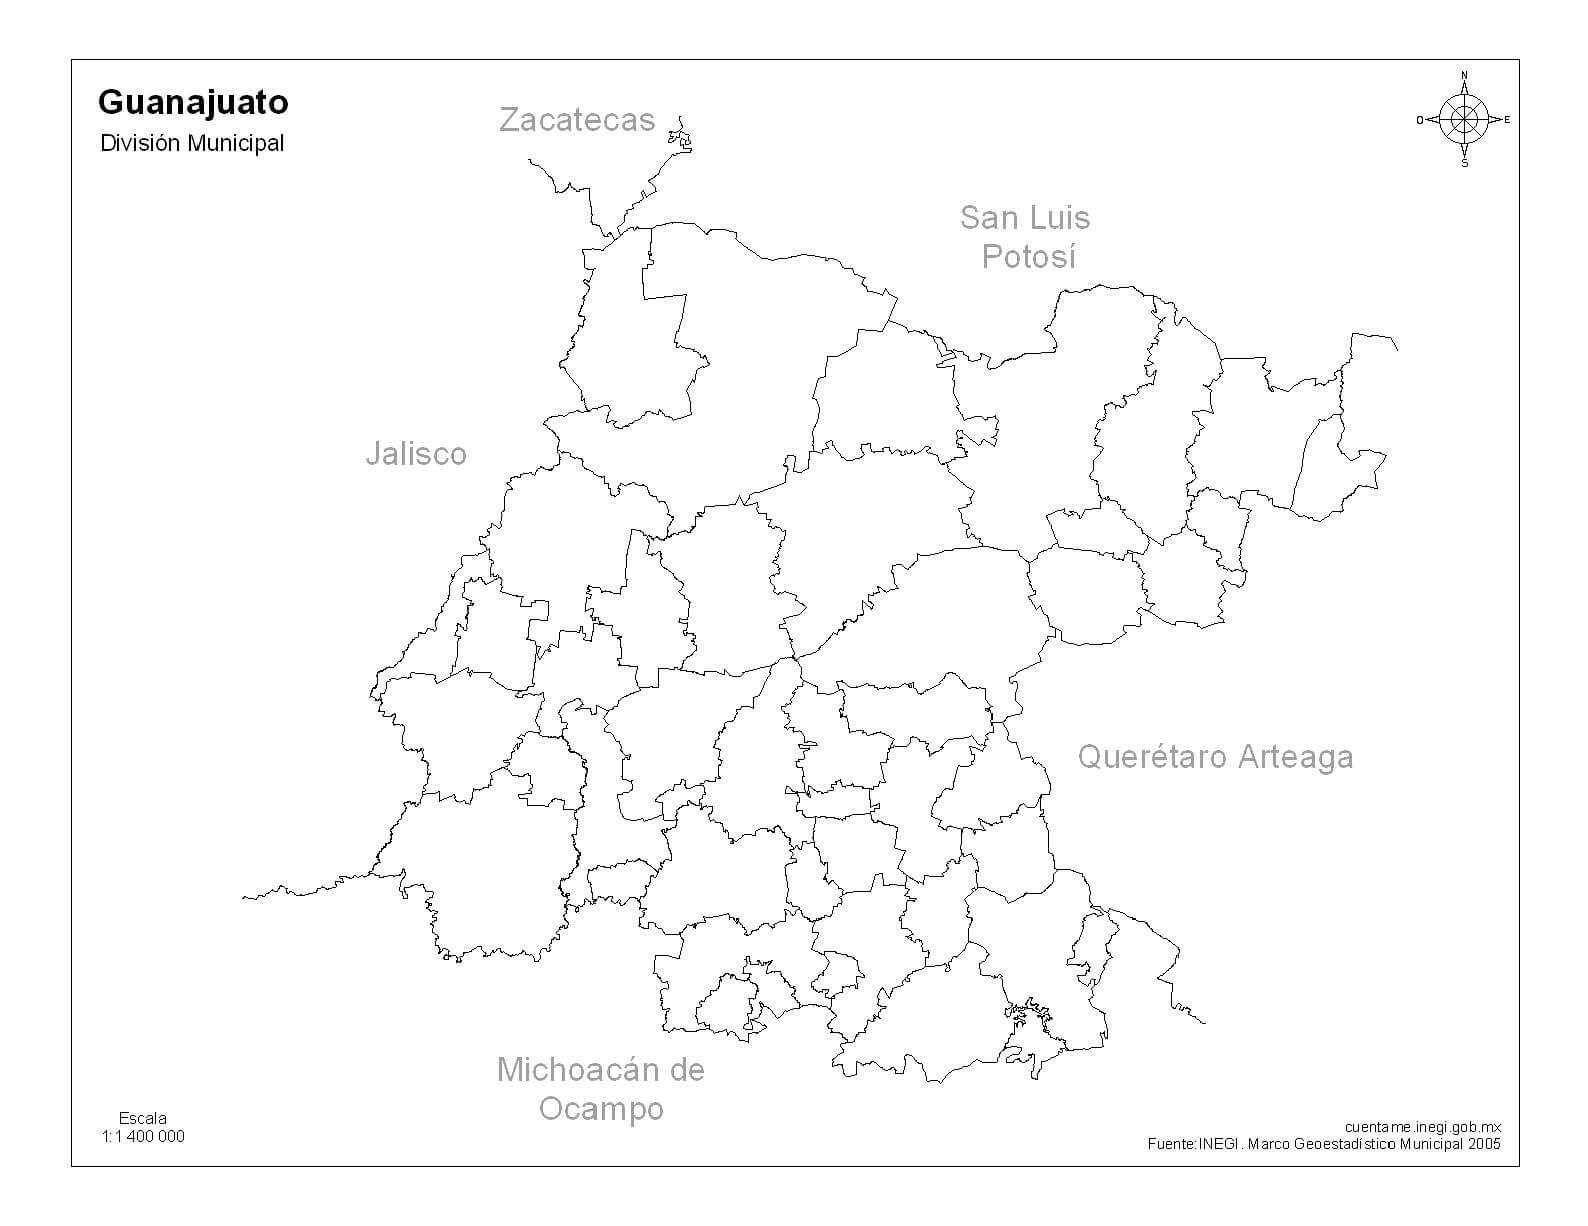 mapa de guanajuato sin nombres